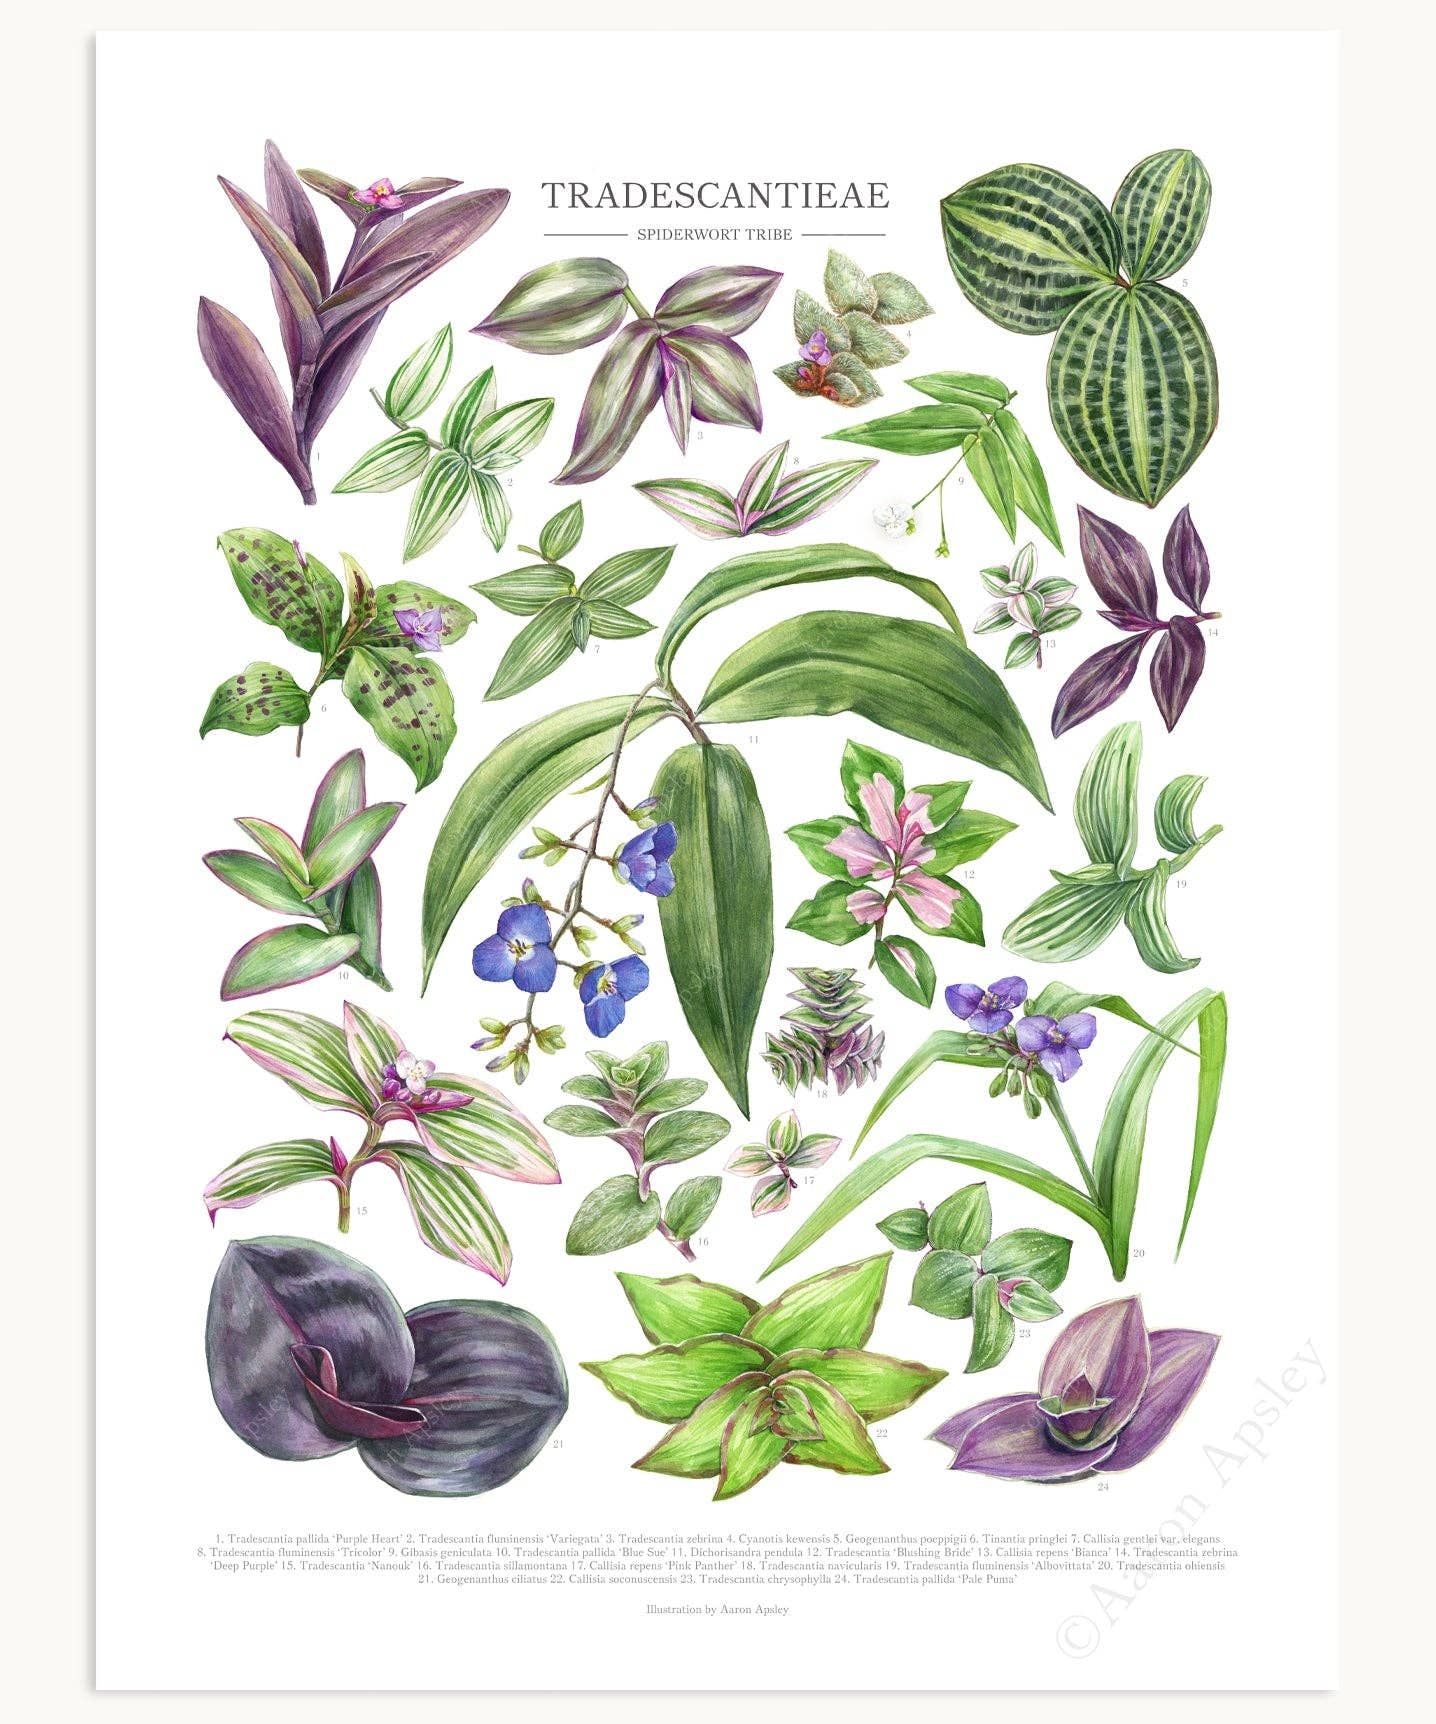 Tradescantieae Species Print: 12"x16"